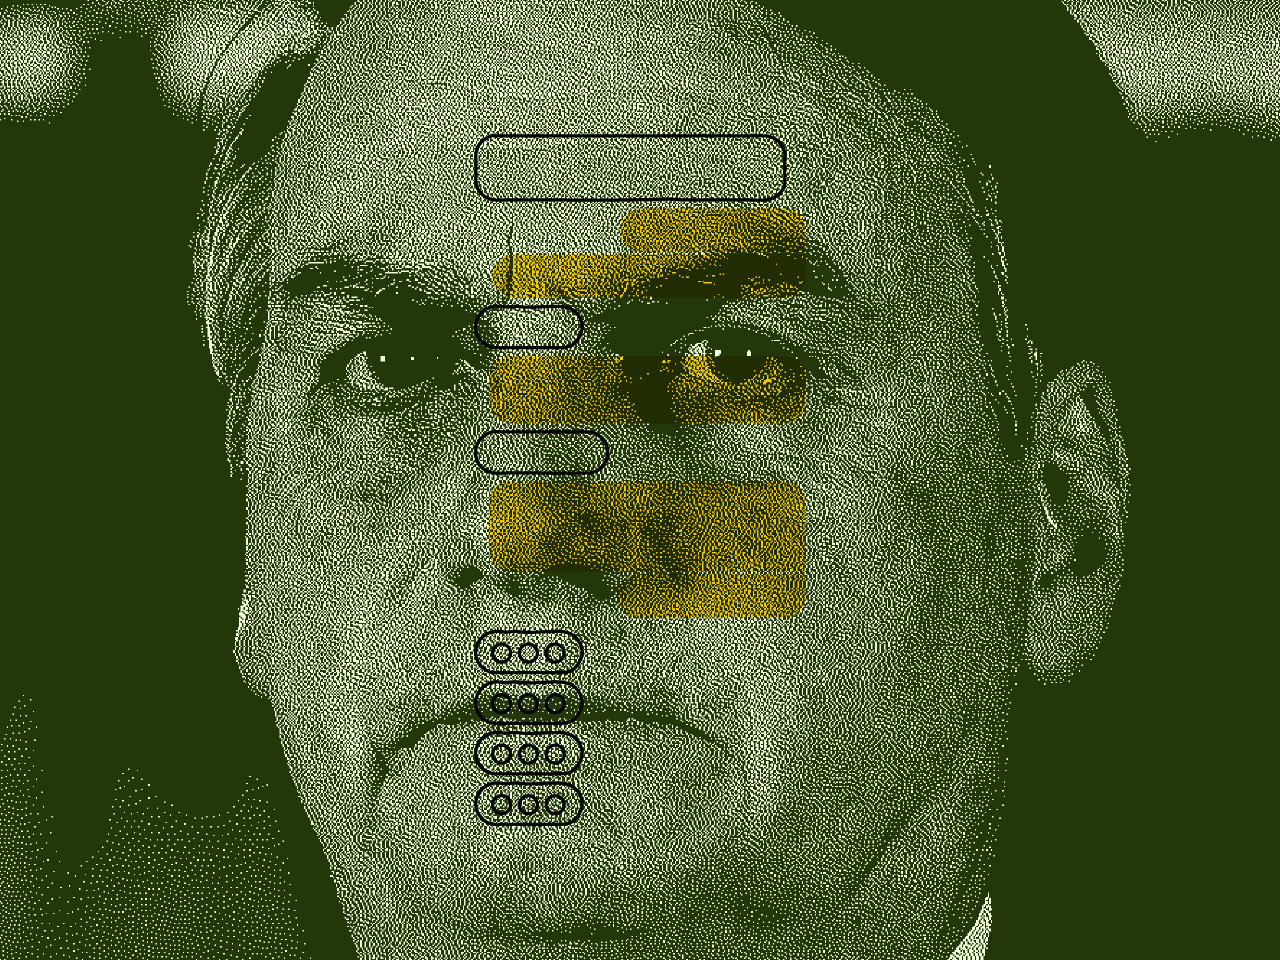 Medida Bolsonaro sobre moderação de redes pegou mal com todo mundo